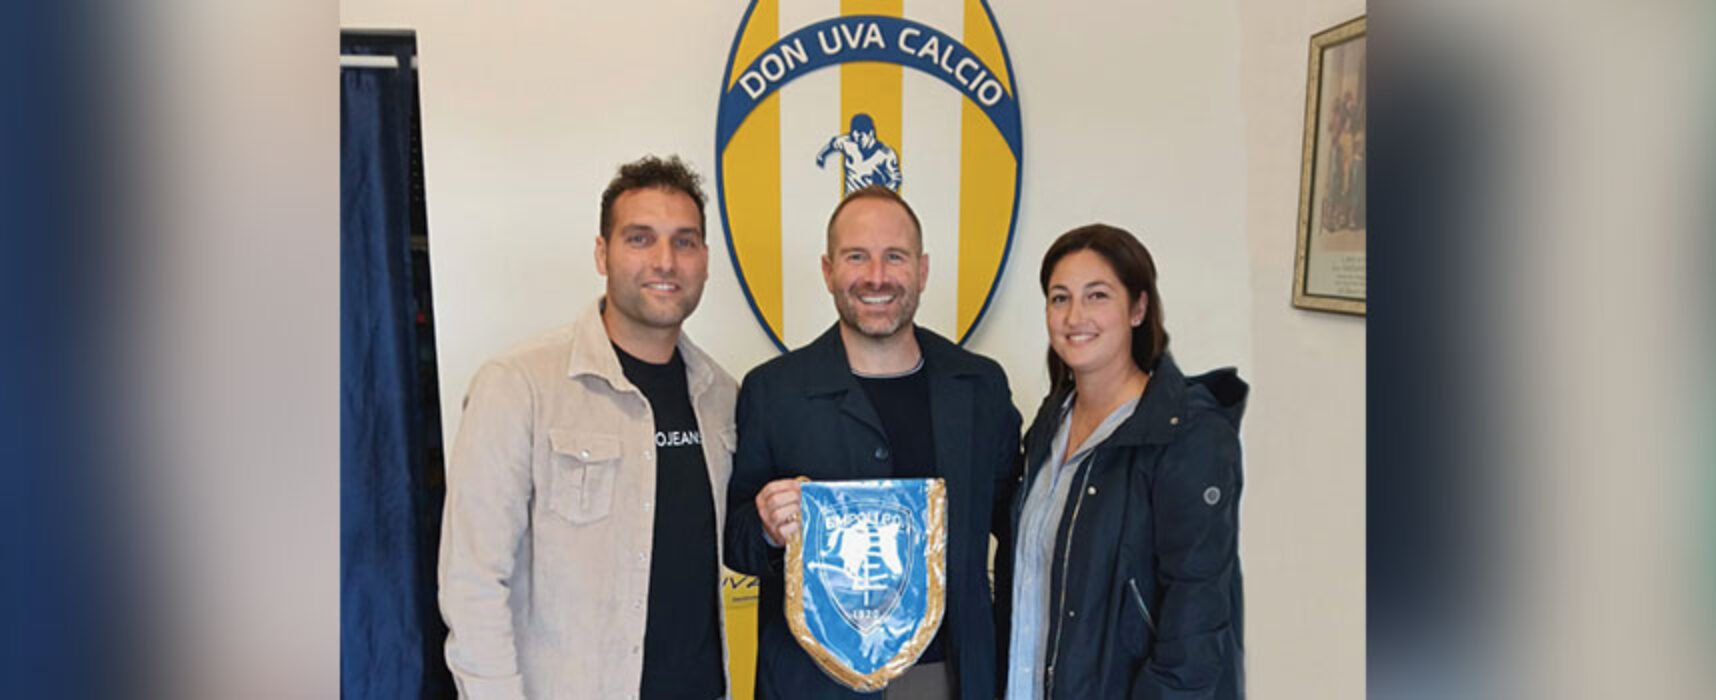 Don Uva Calcio ed Empoli Academy, ufficiale la collaborazione